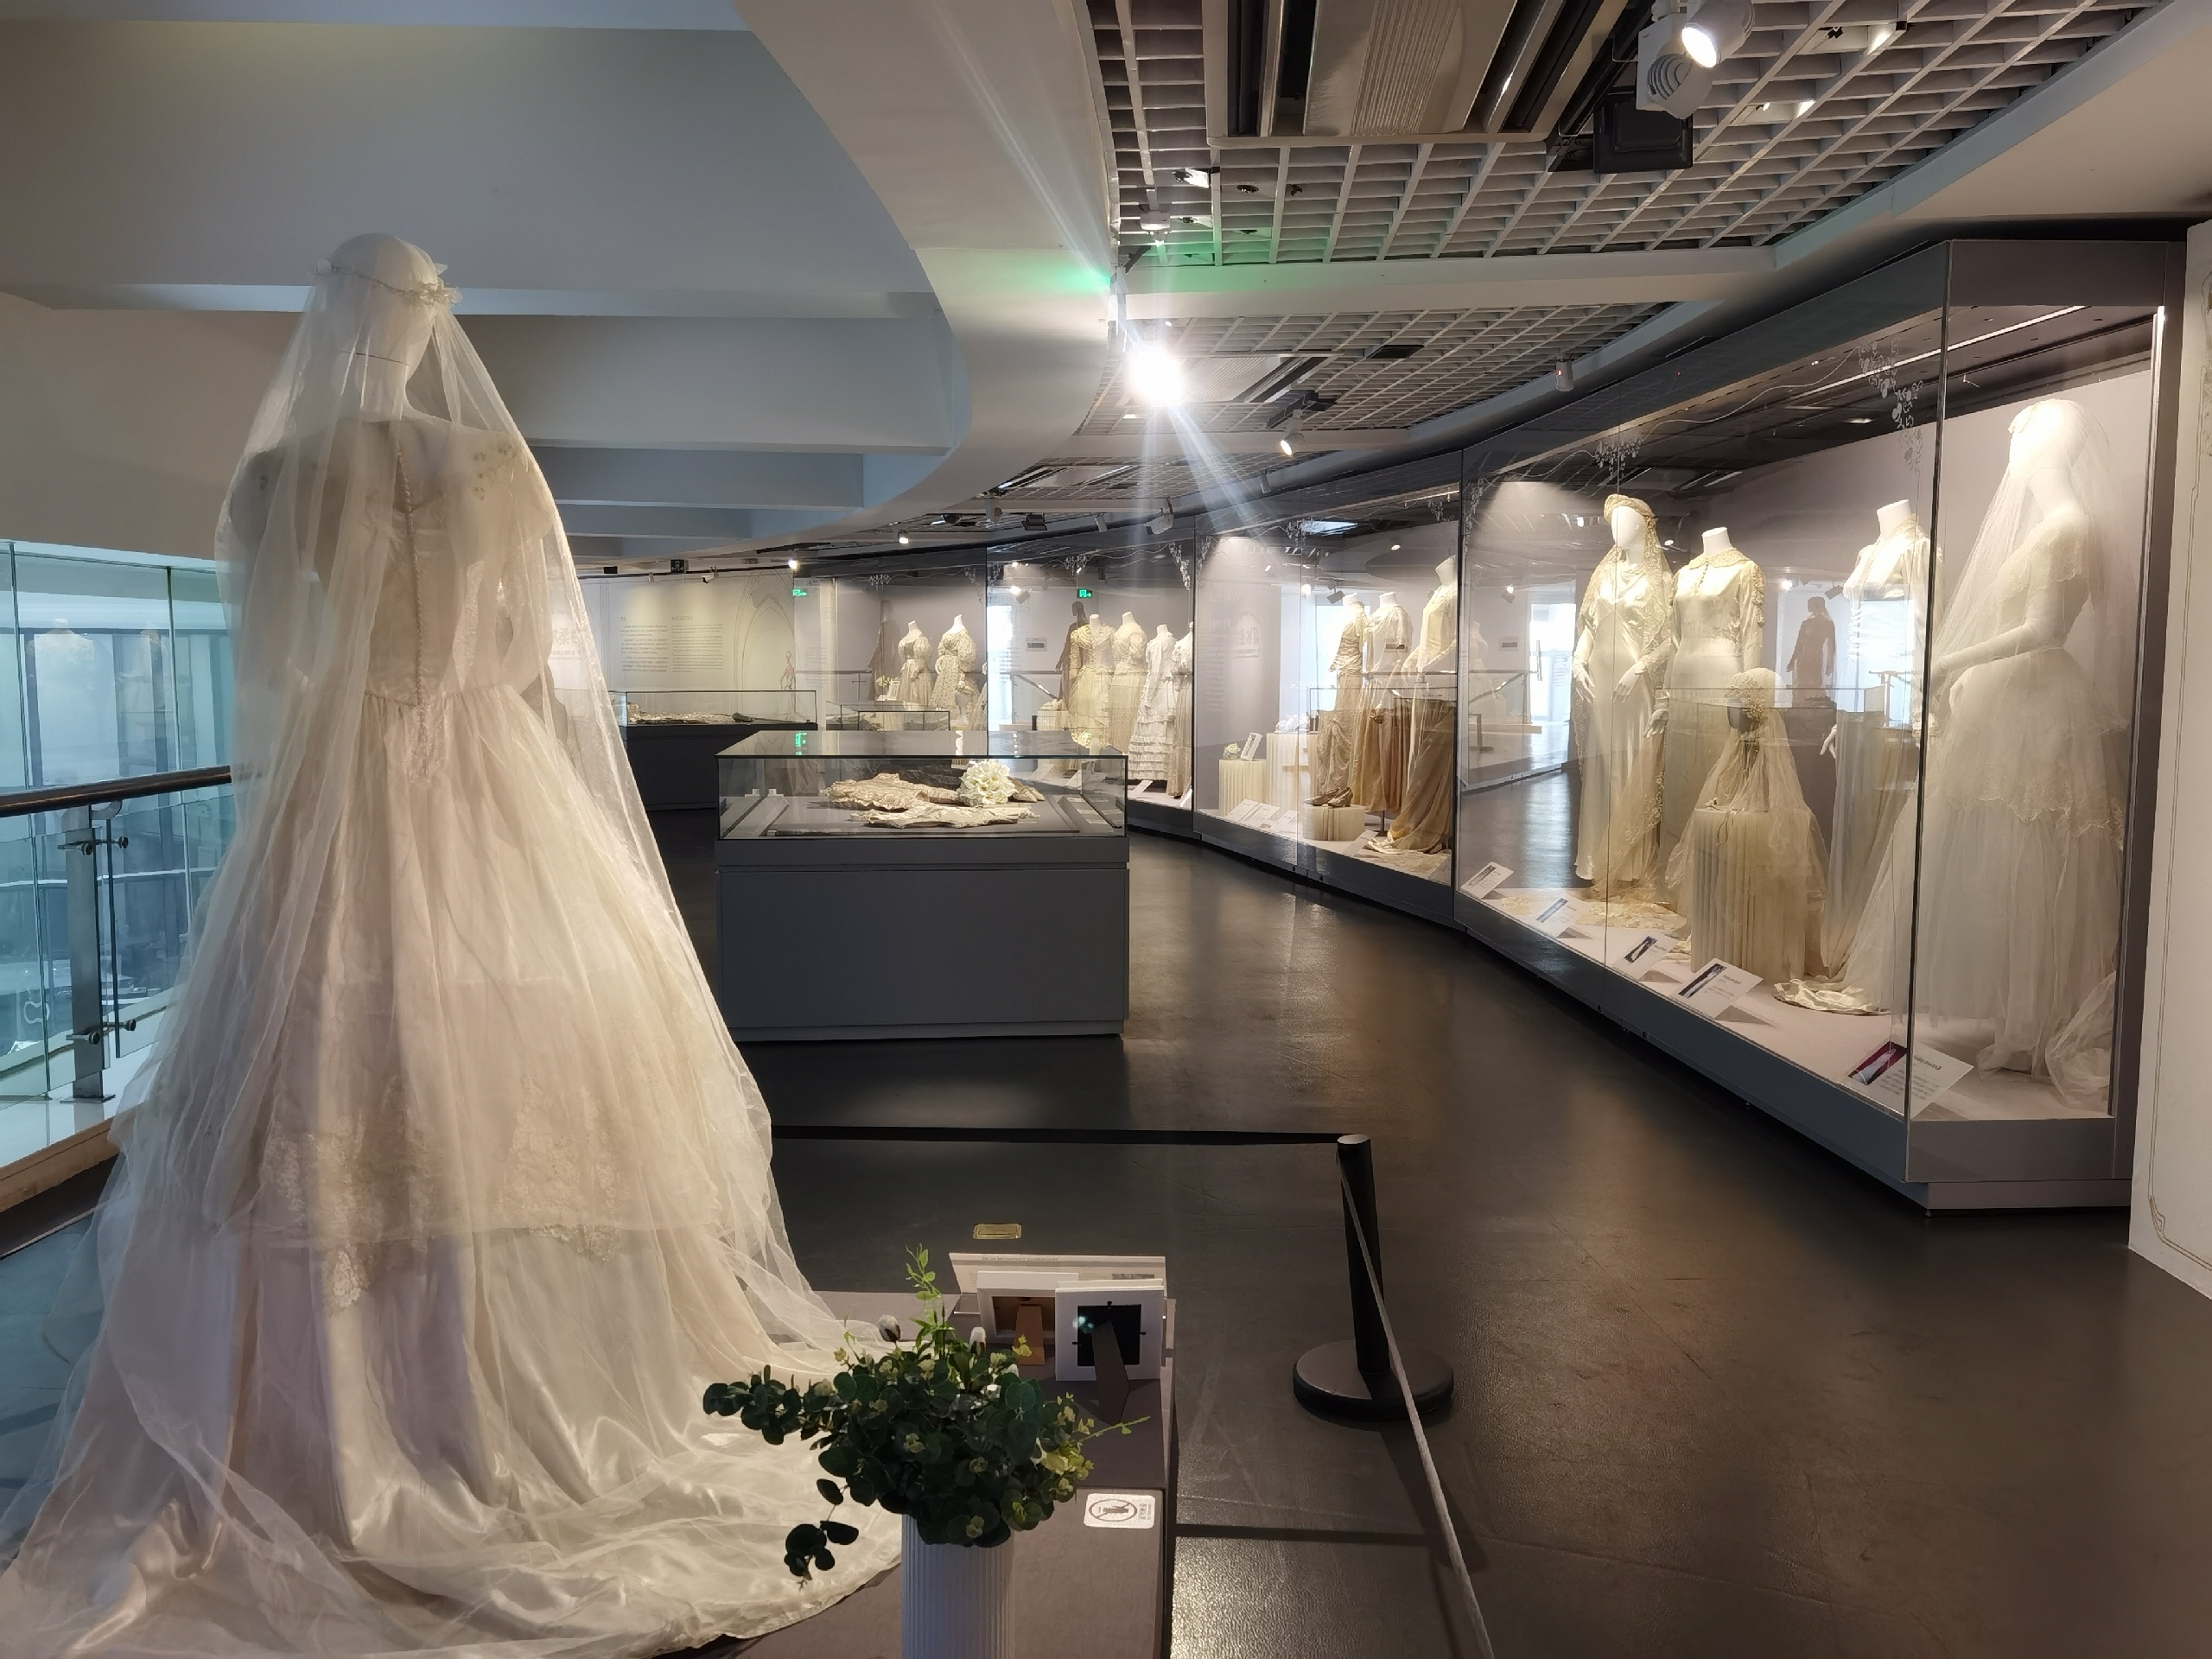 浙江丝绸博物馆——平时见不到的19-20世纪西方婚纱展